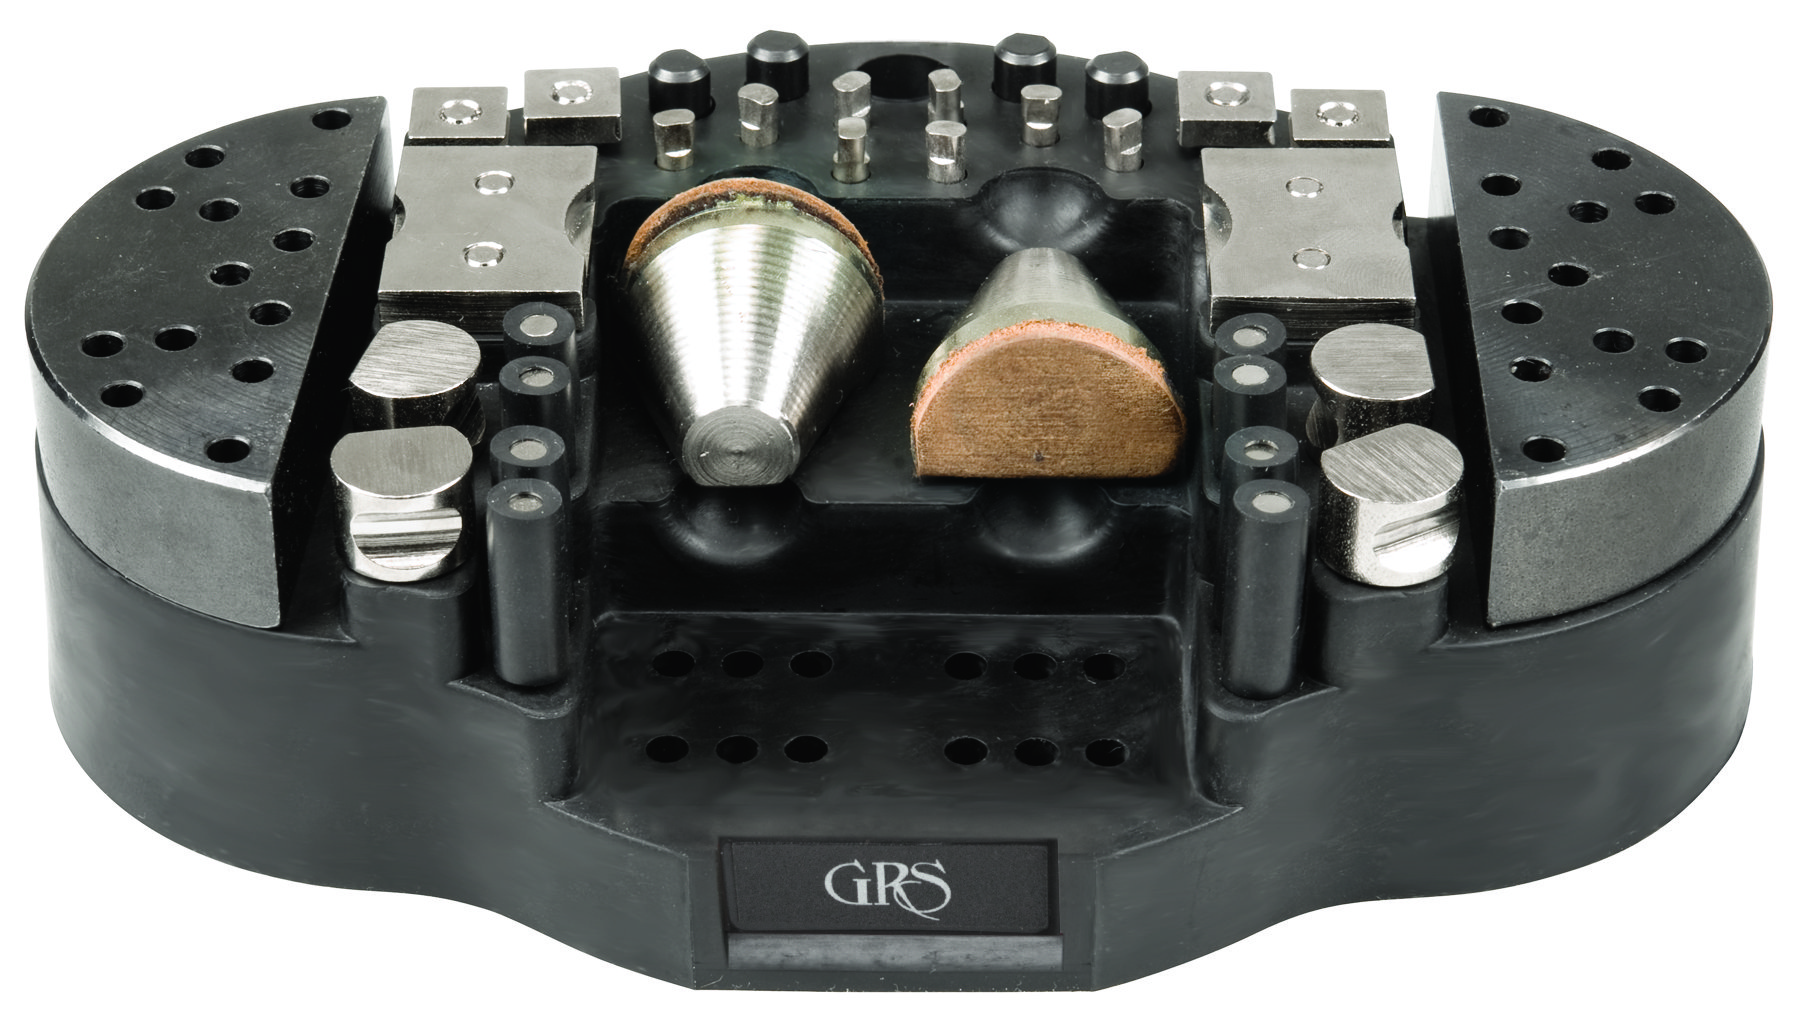 GRS-Haltezubehör 30-teilig für Gravierkugel Magnablock